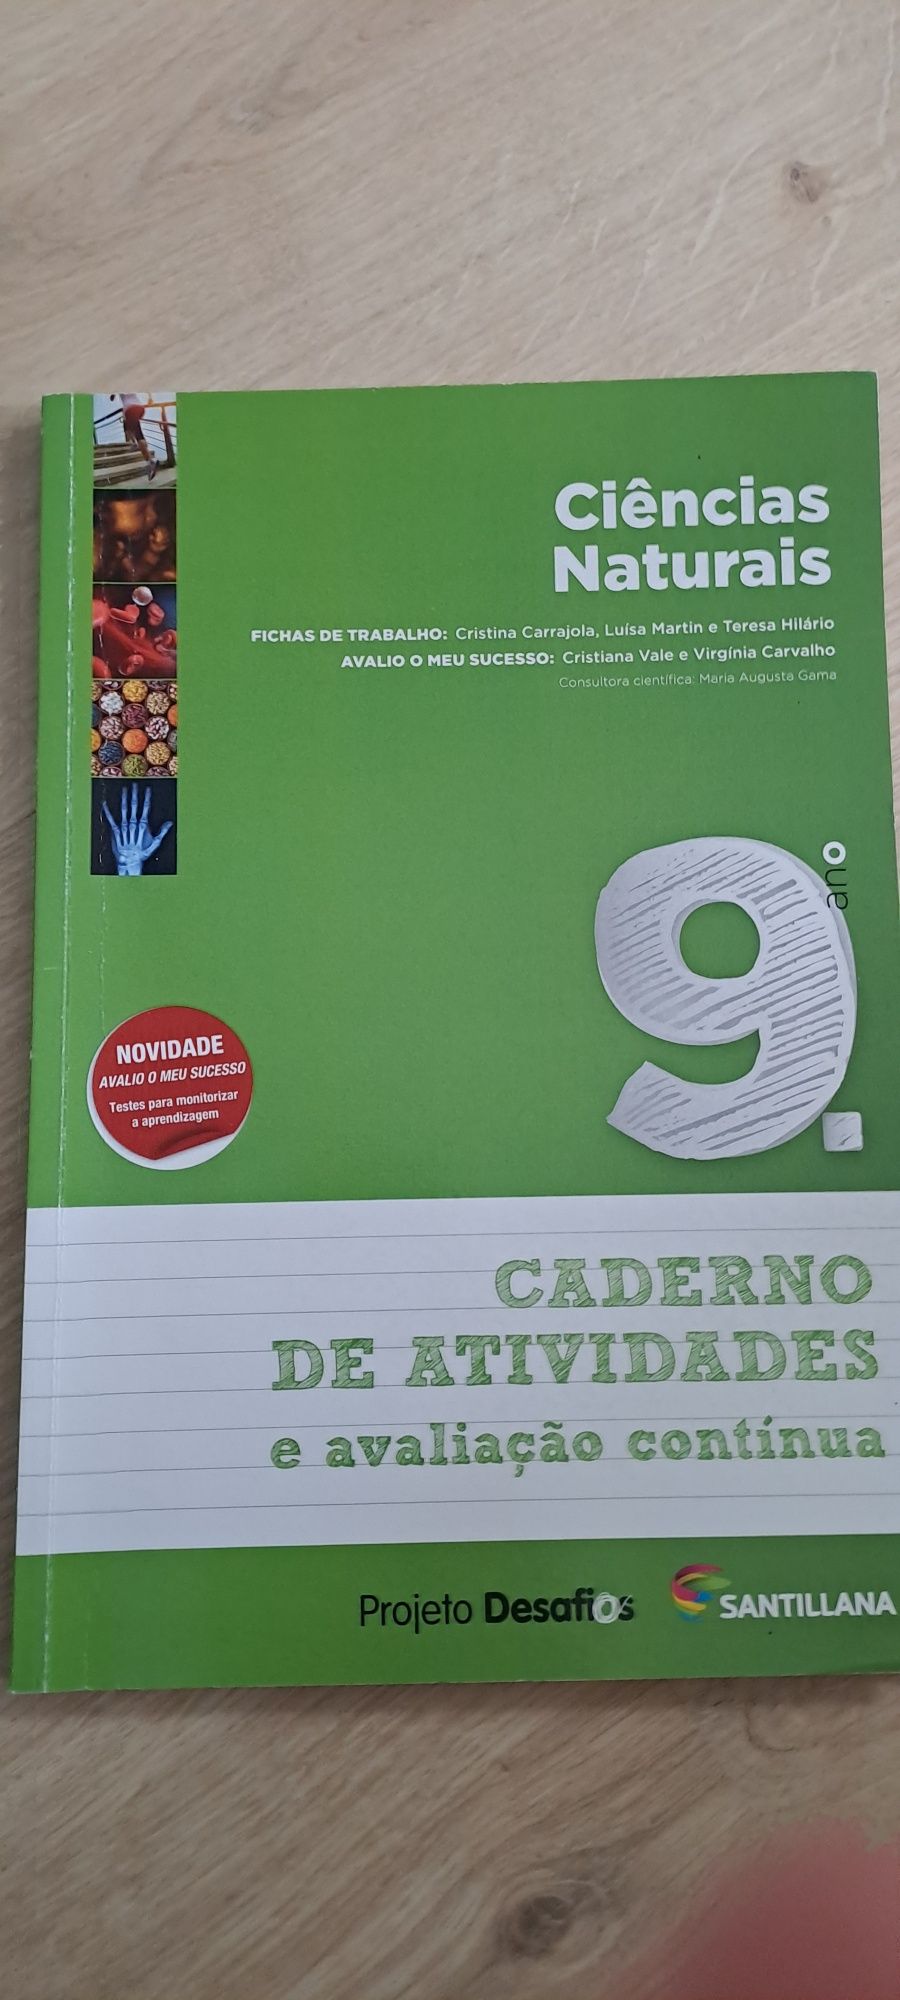 9 ano caderno de actividades de Ciências da Natureza